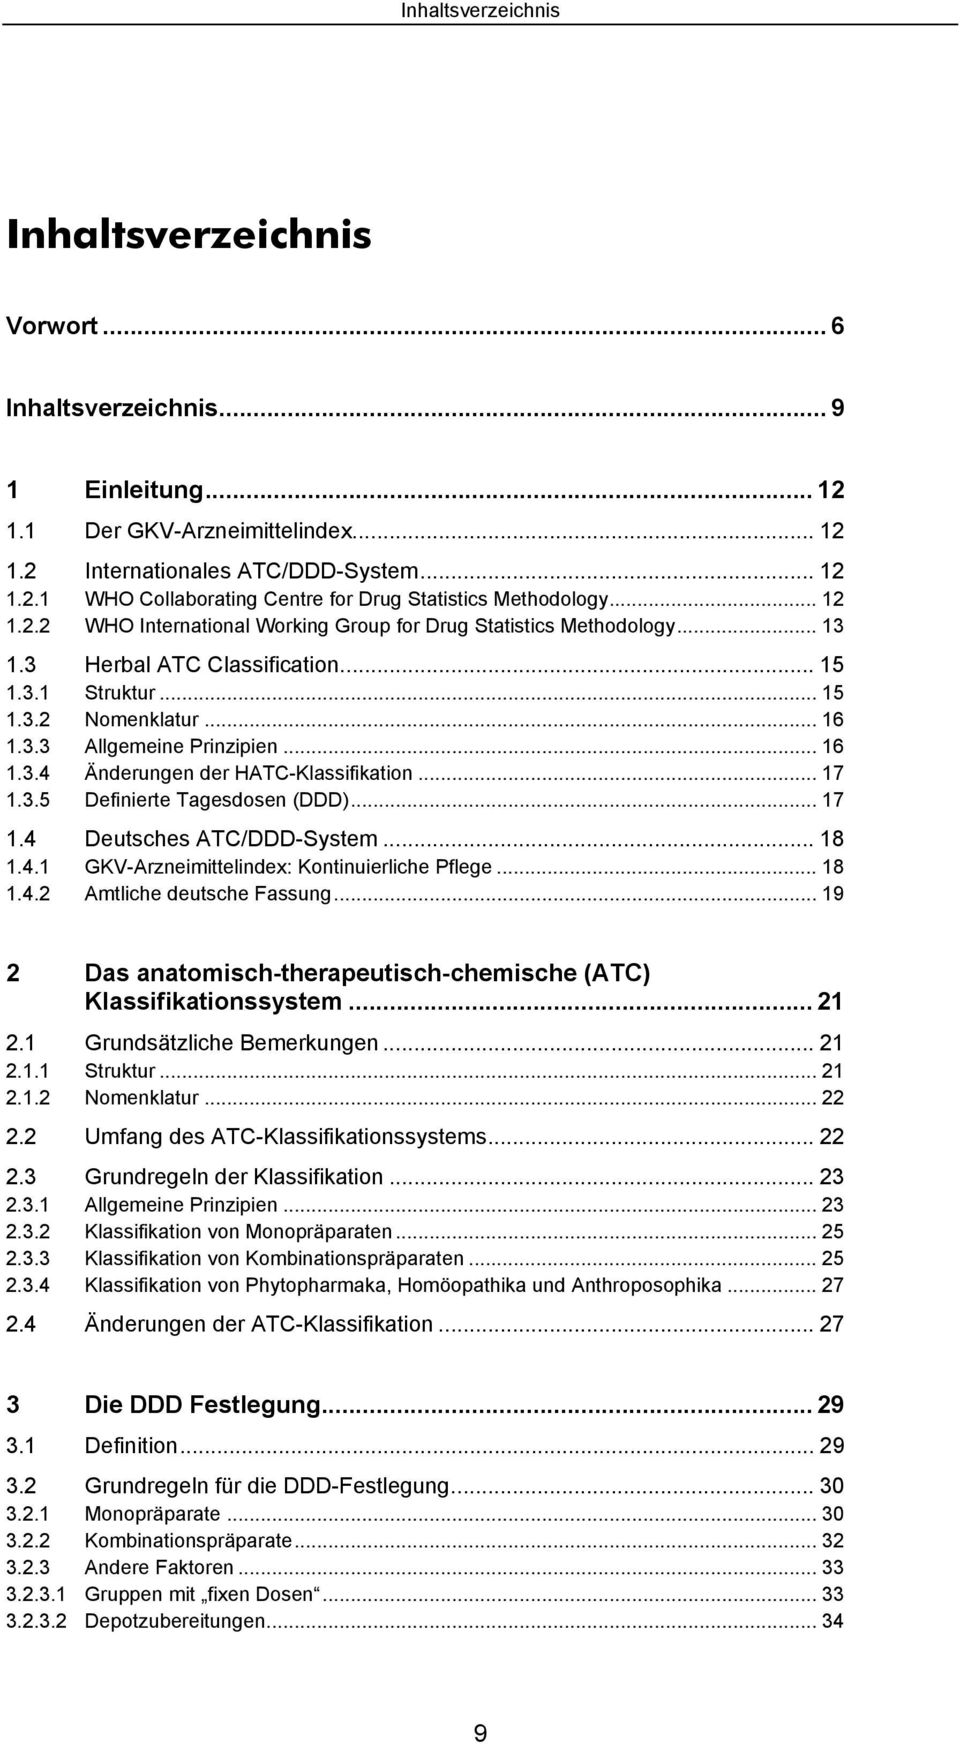 .. 17 1.3.5 Definierte Tagesdosen (DDD)... 17 1.4 Deutsches ATC/DDD-System... 18 1.4.1 GKV-Arzneimittelindex: Kontinuierliche Pflege... 18 1.4.2 Amtliche deutsche Fassung.